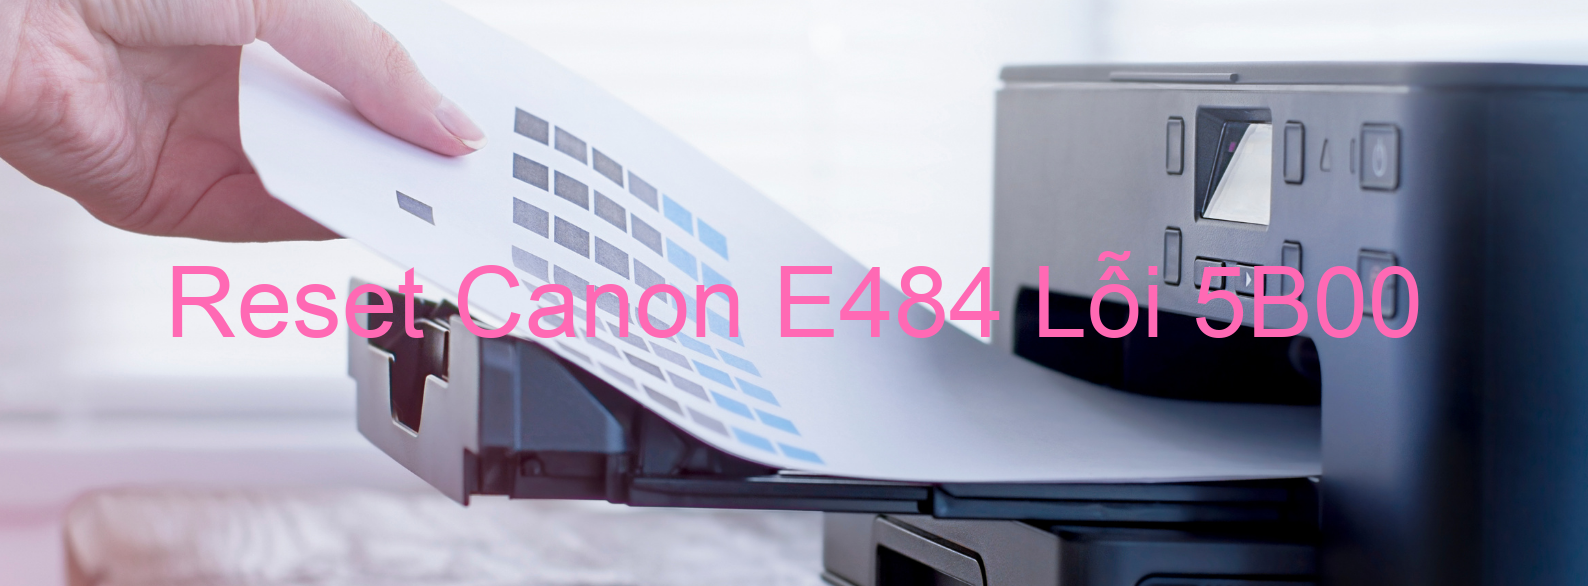 Reset Canon E484 Lỗi 5B00